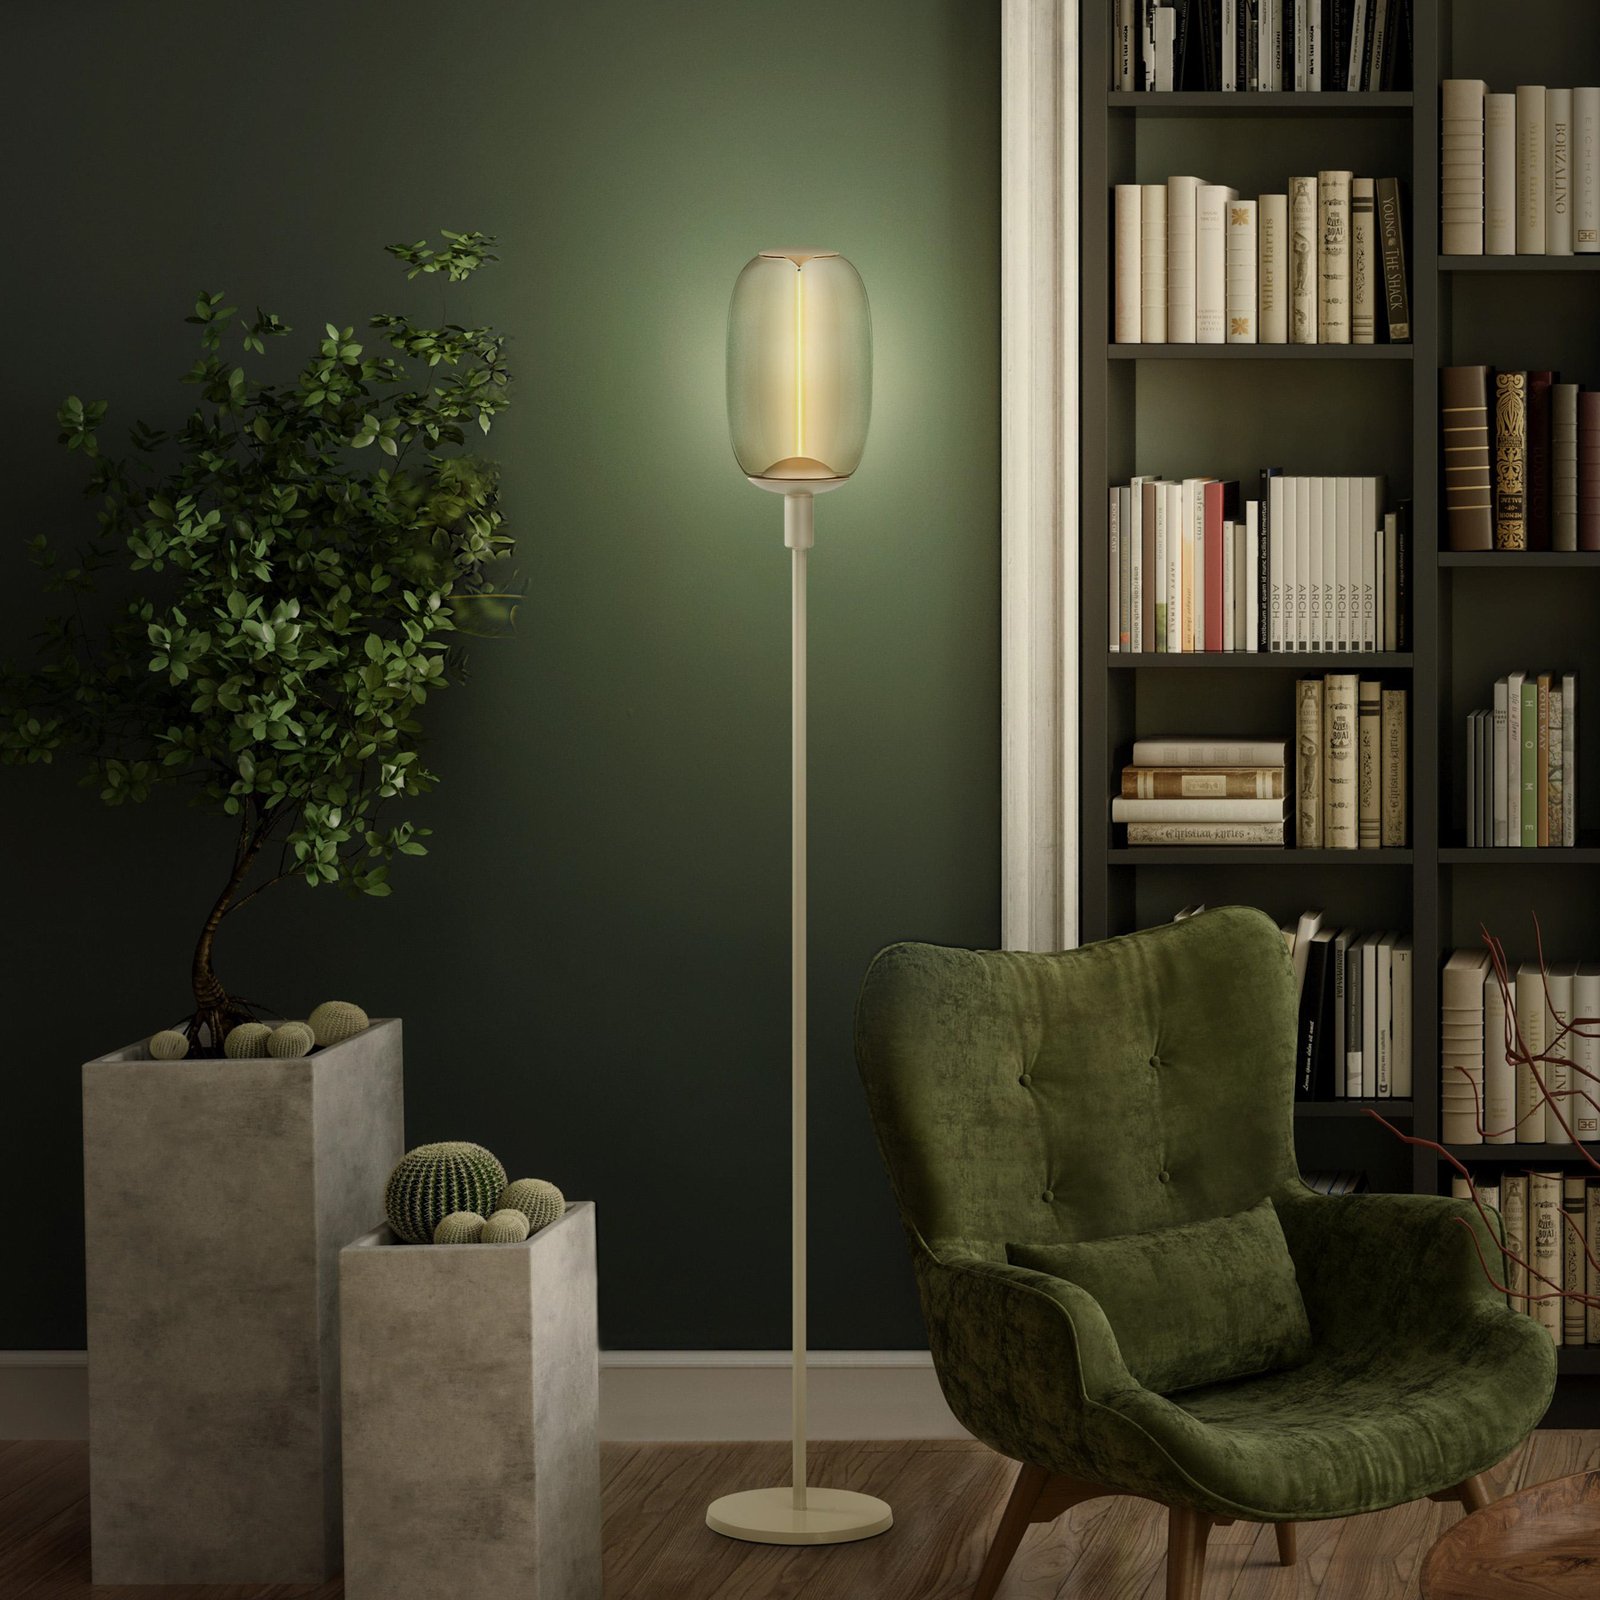 LEDVANCE Lampe sur pied Decor Stick E27, hauteur 146cm, beige